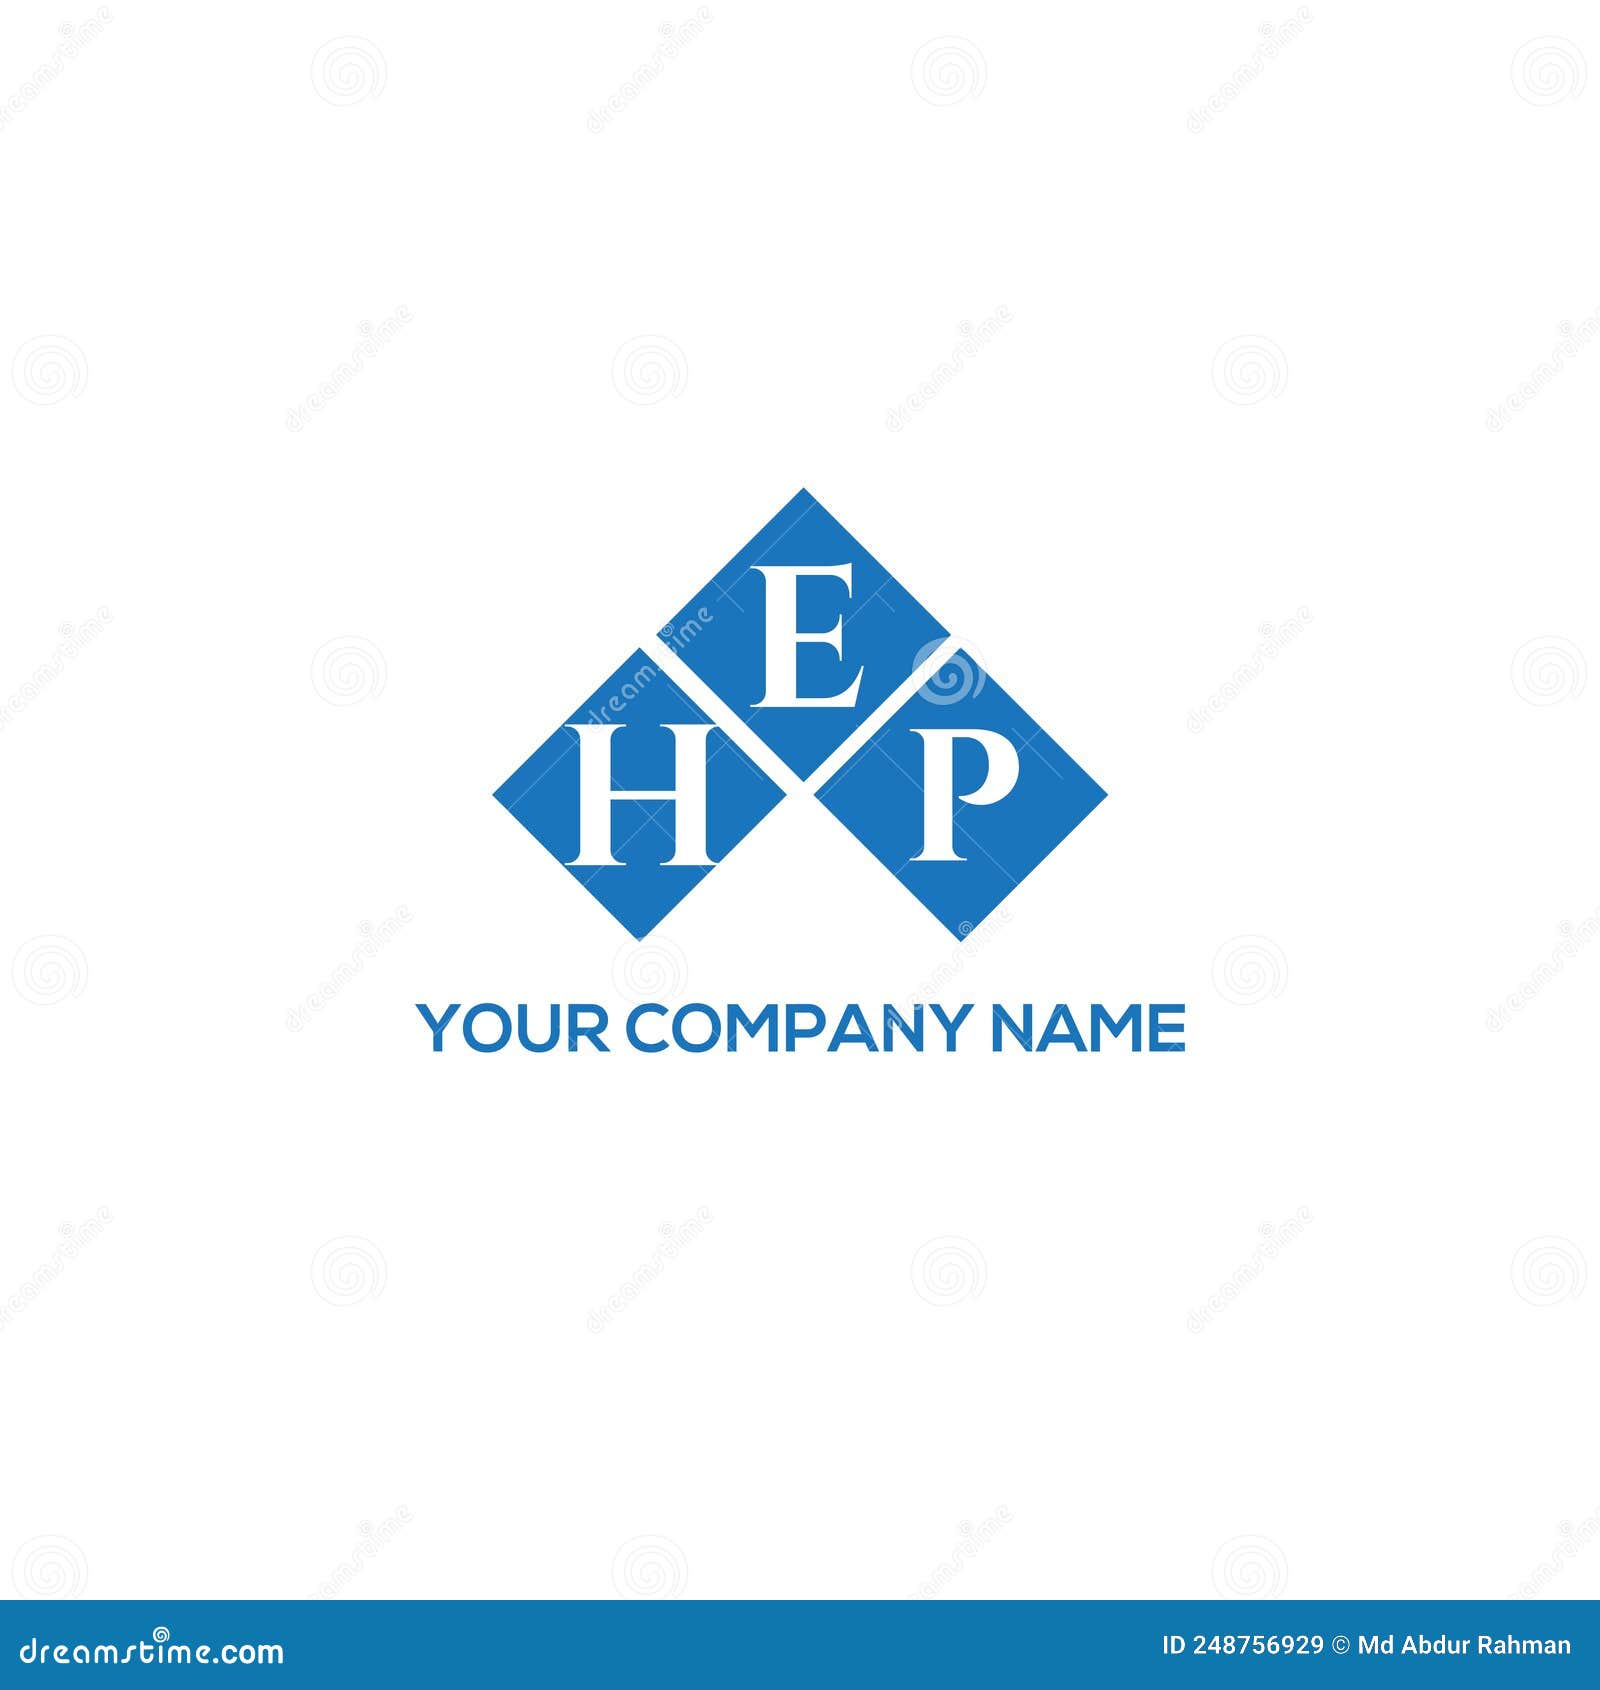 hep letter logo  on black background. hep creative initials letter logo concept. hep letter 